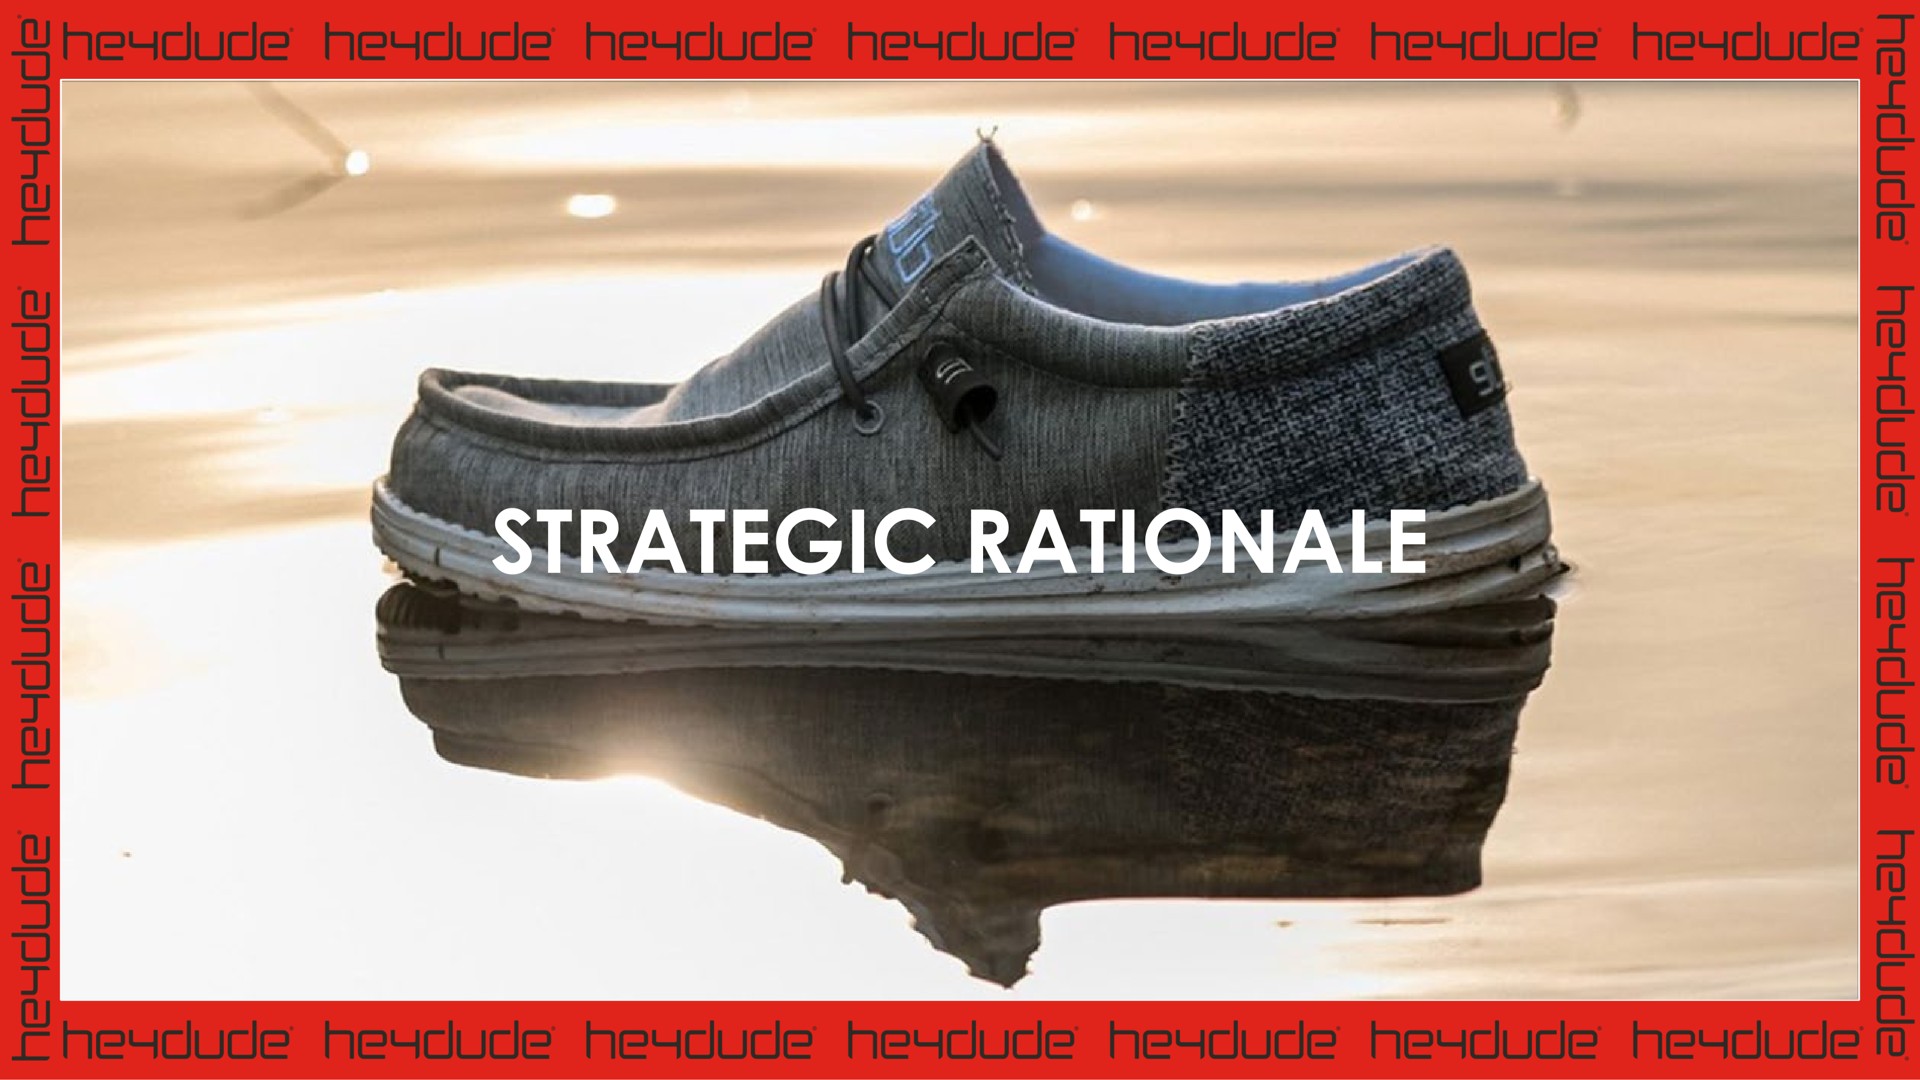 strategic rationale | Crocs